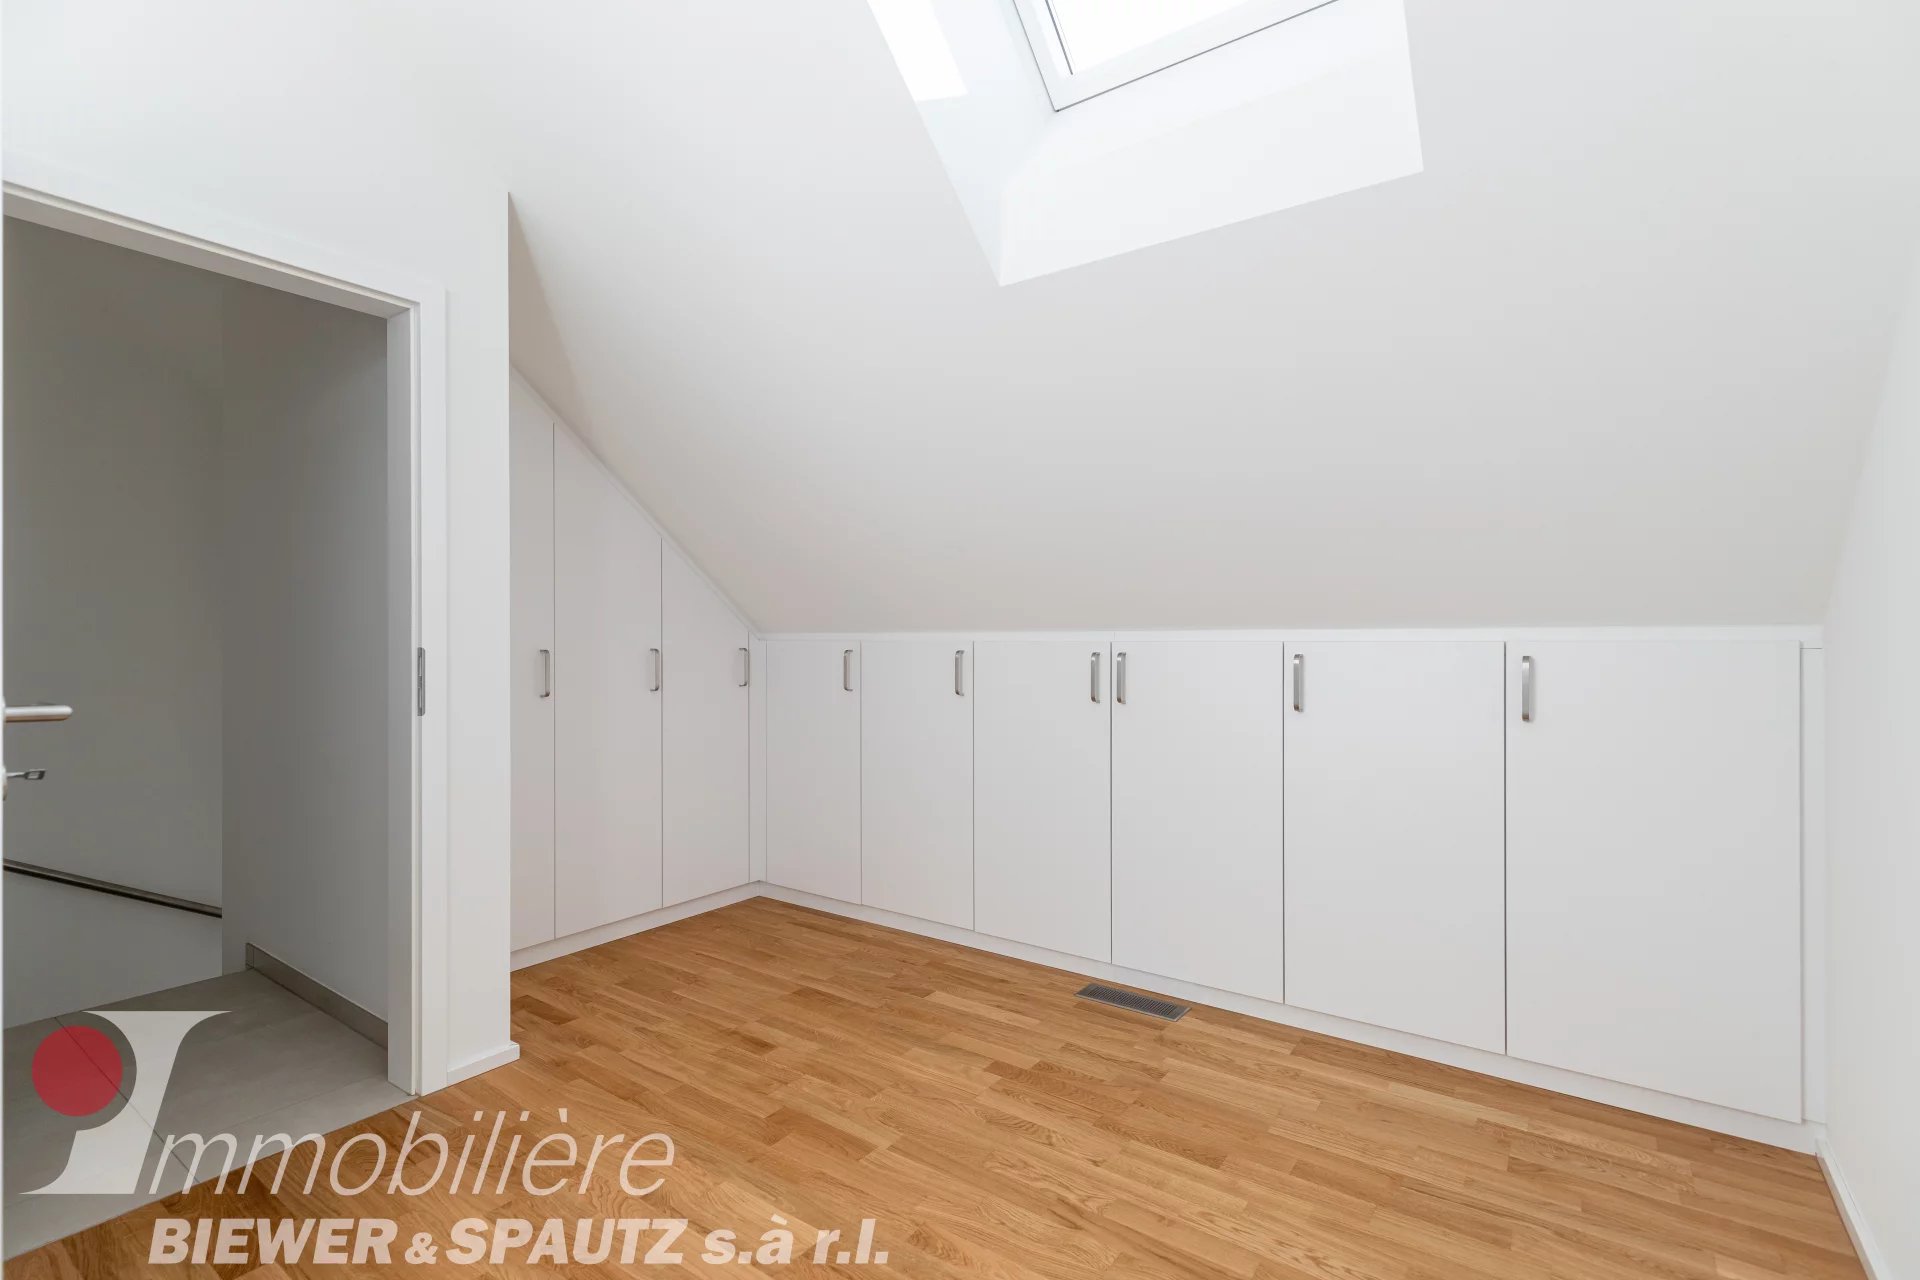 UNDER SALES AGREEMENT - Triplex with 3 bedrooms in Niederanven